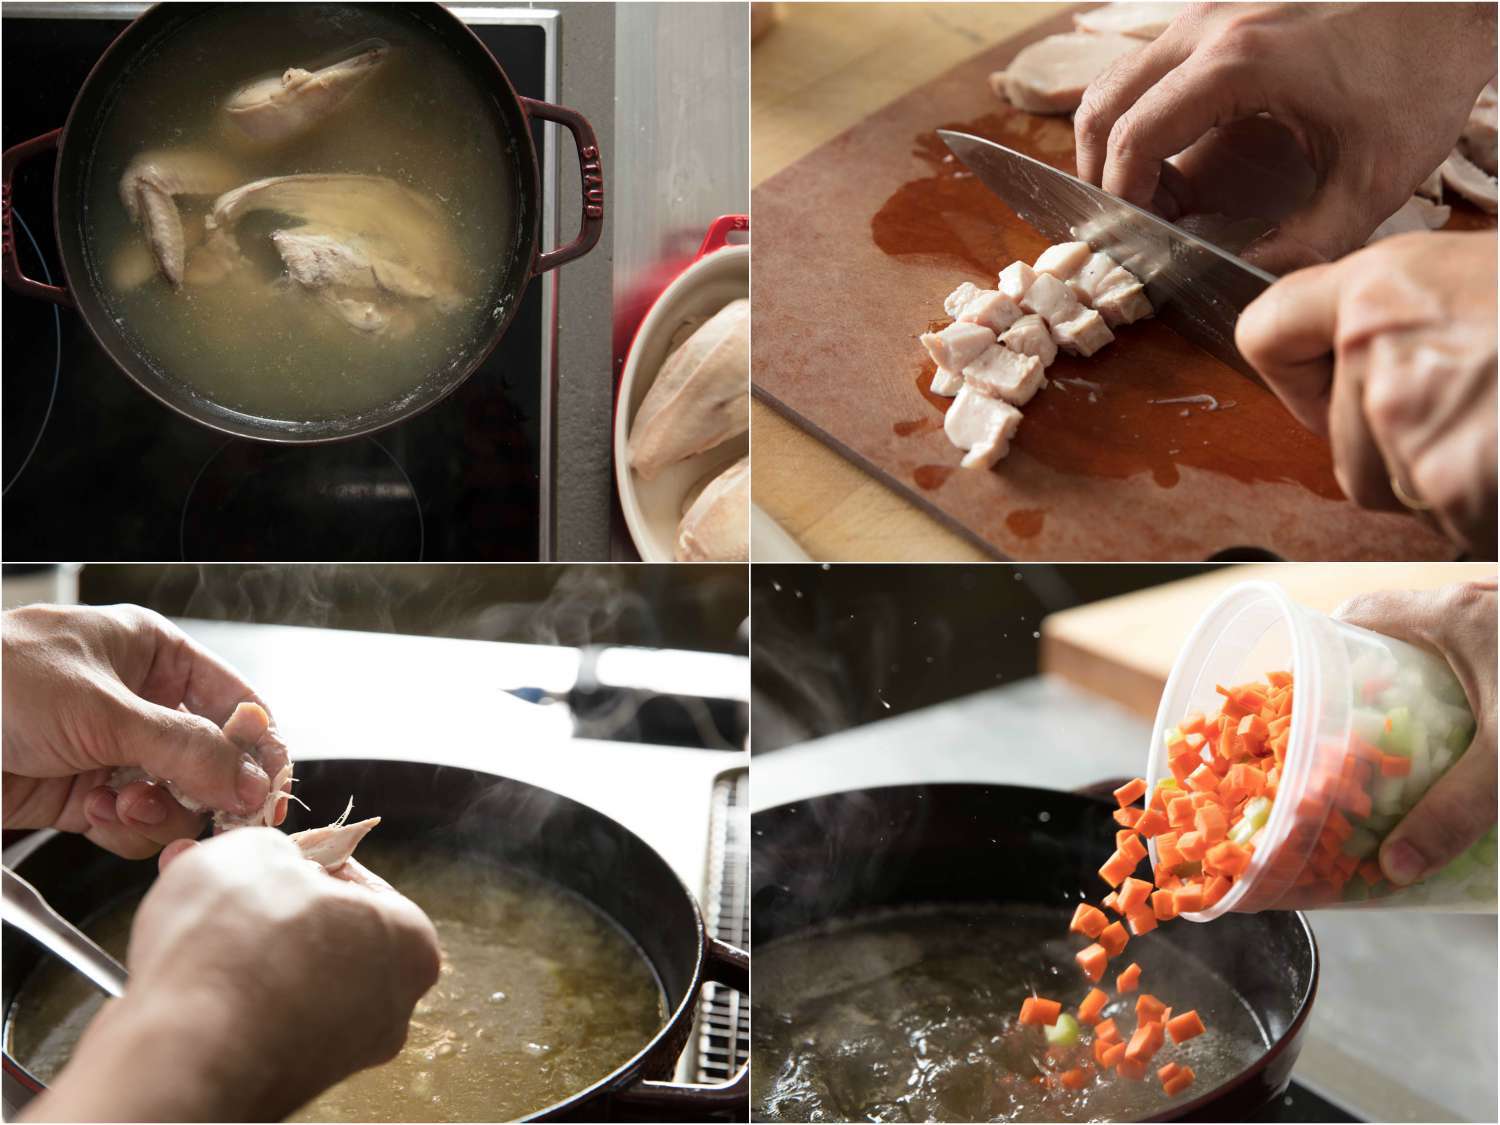 鸡汤制作照片拼贴:鸡汤炖鸡，水煮鸡肉切丁，鸡肉撕成块，在汤中加入蔬菜丁gydF4y2Ba